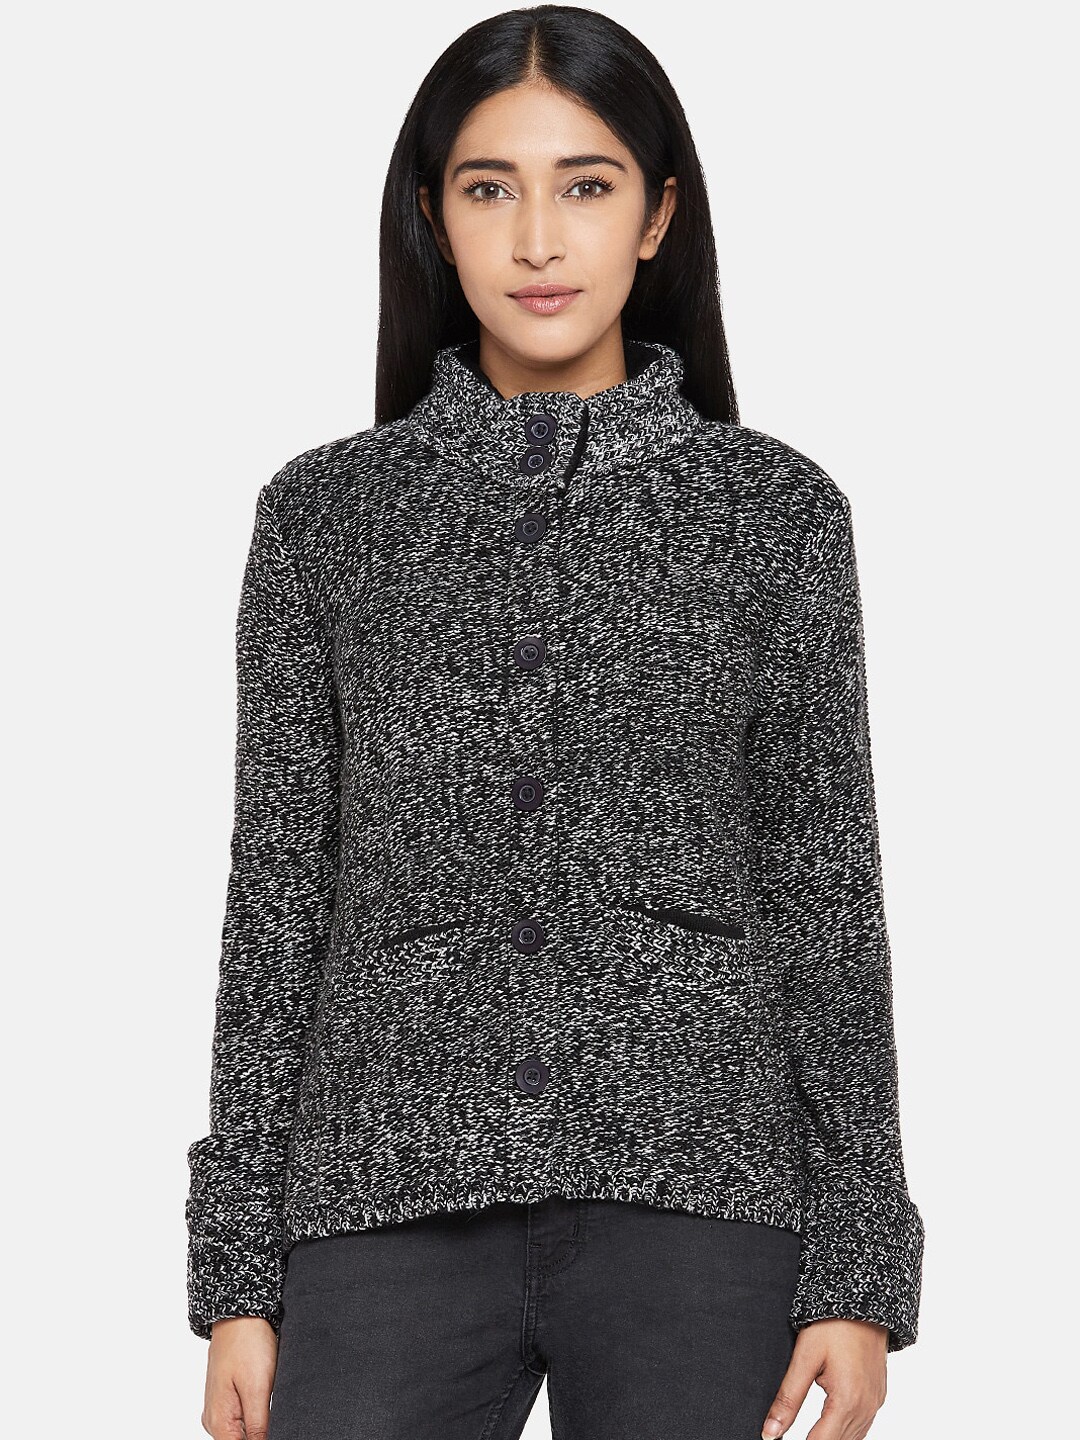 People Women Grey Self Design Cardigan Sweater Price in India